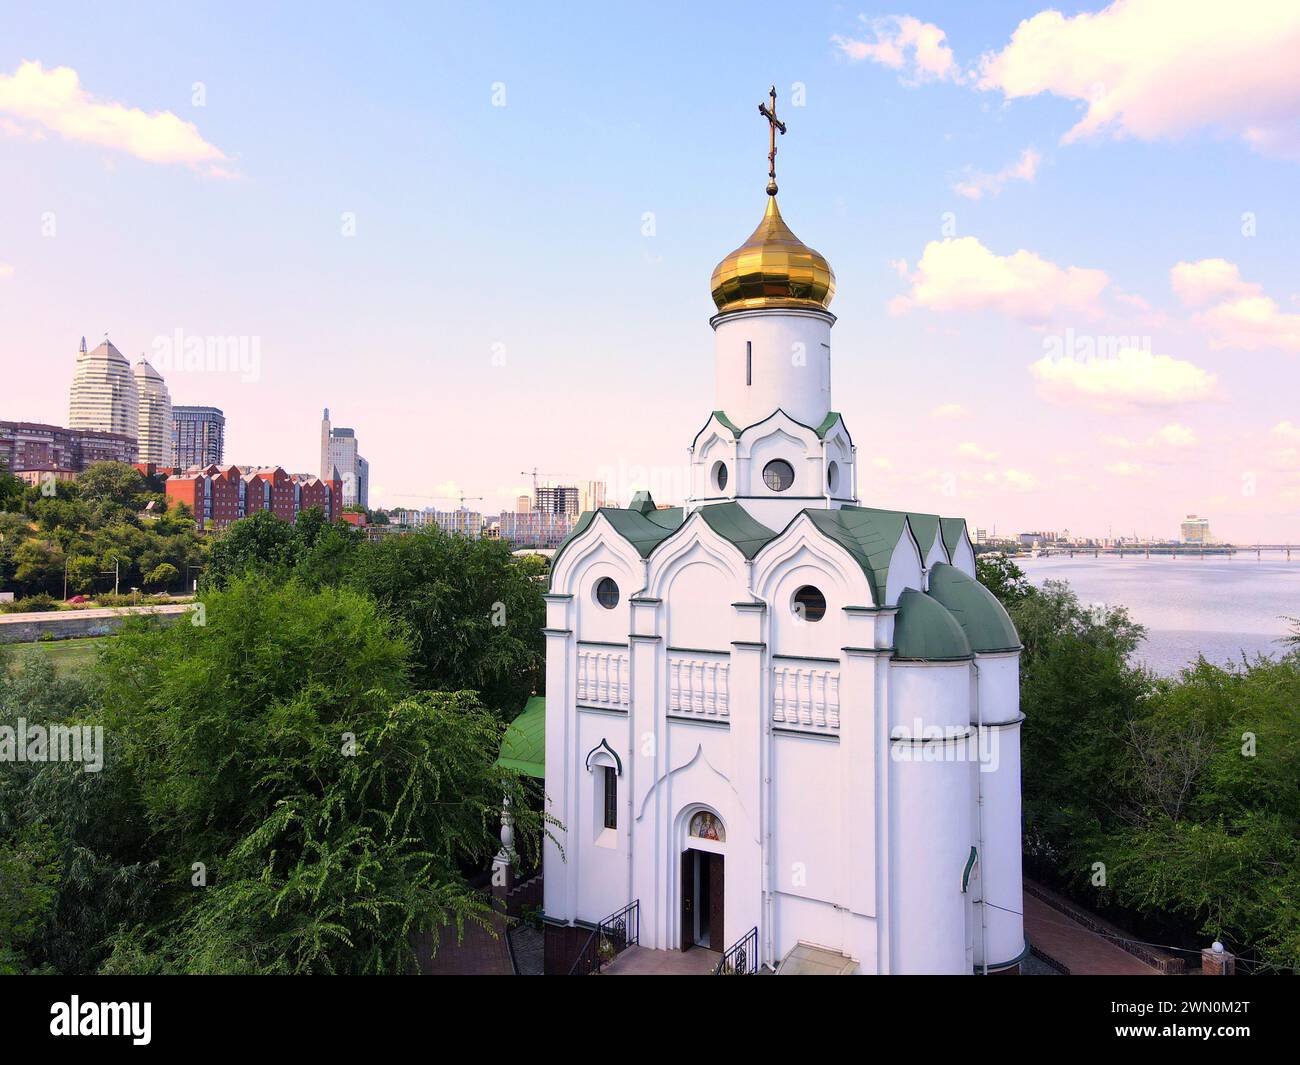 Belle église orthodoxe chrétienne blanche près de la rivière pour Pâques. Bâtiments et gratte-ciel dans la ville de Dnepr Ukraine. Paysage urbain ukrainien de Pâques Banque D'Images